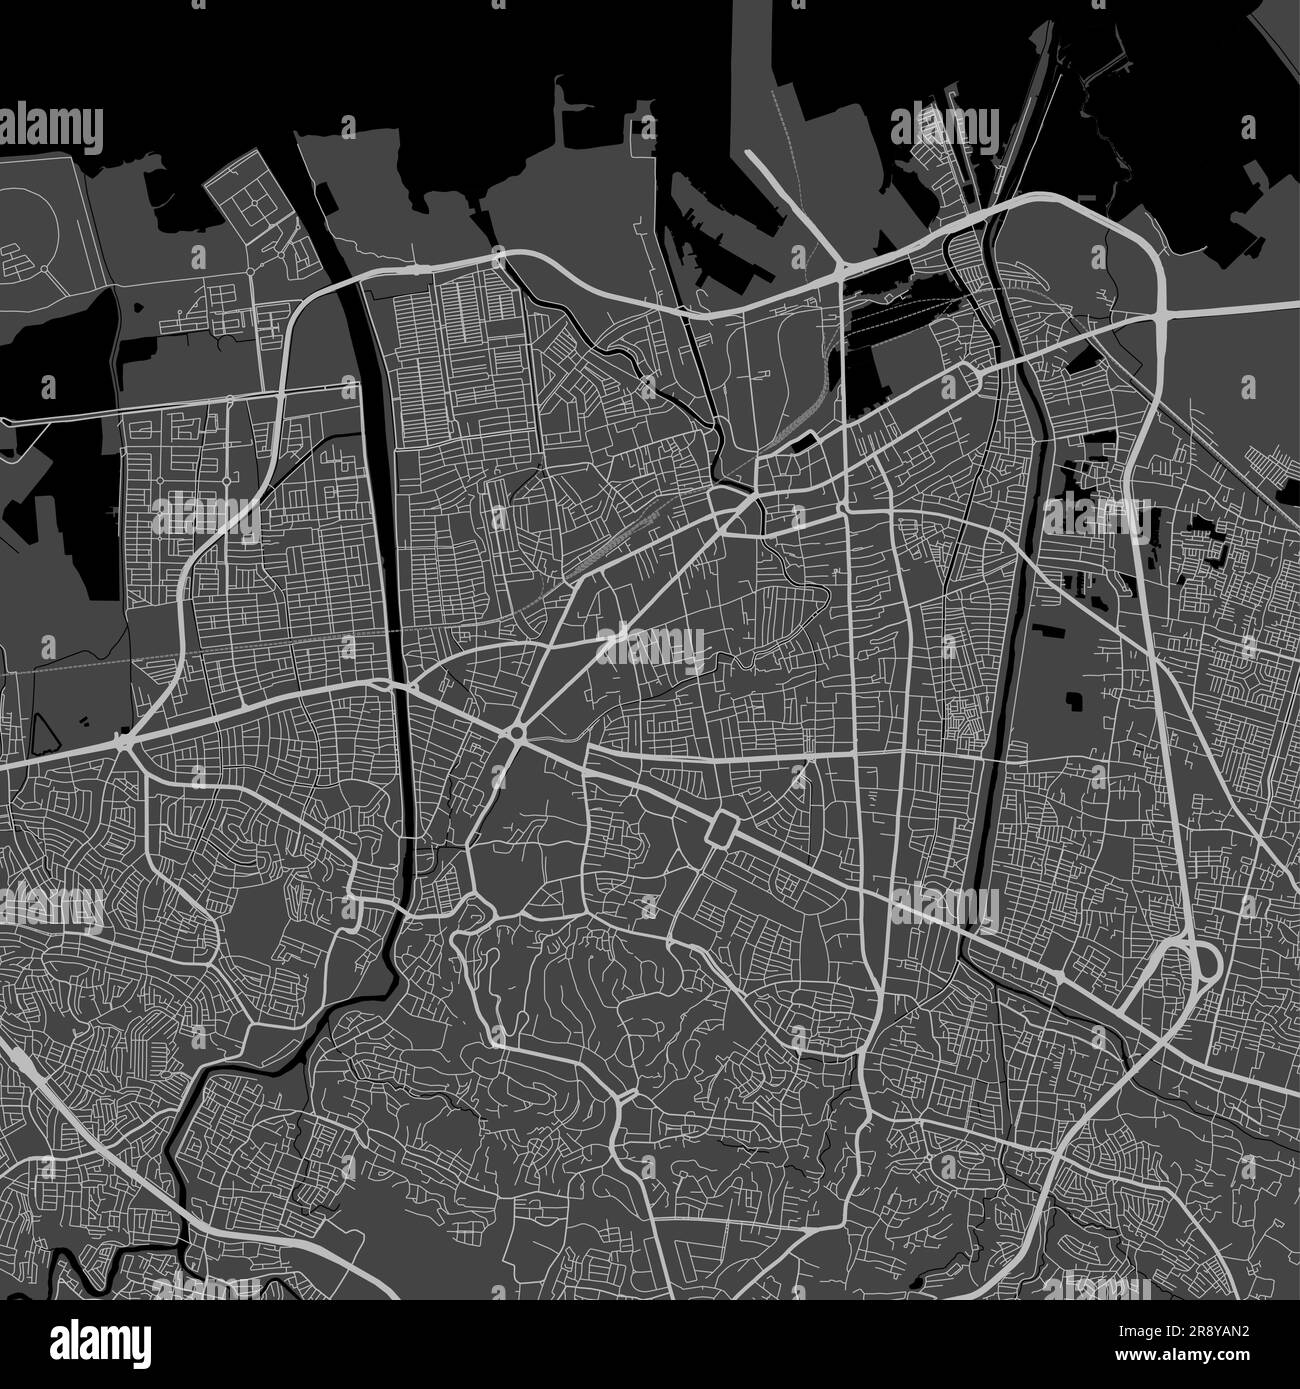 Stadtplan von Semarang. Urbanes Schwarz-Weiß-Poster. Straßenkartenbild mit vertikaler Ansicht der Stadt. Stock Vektor